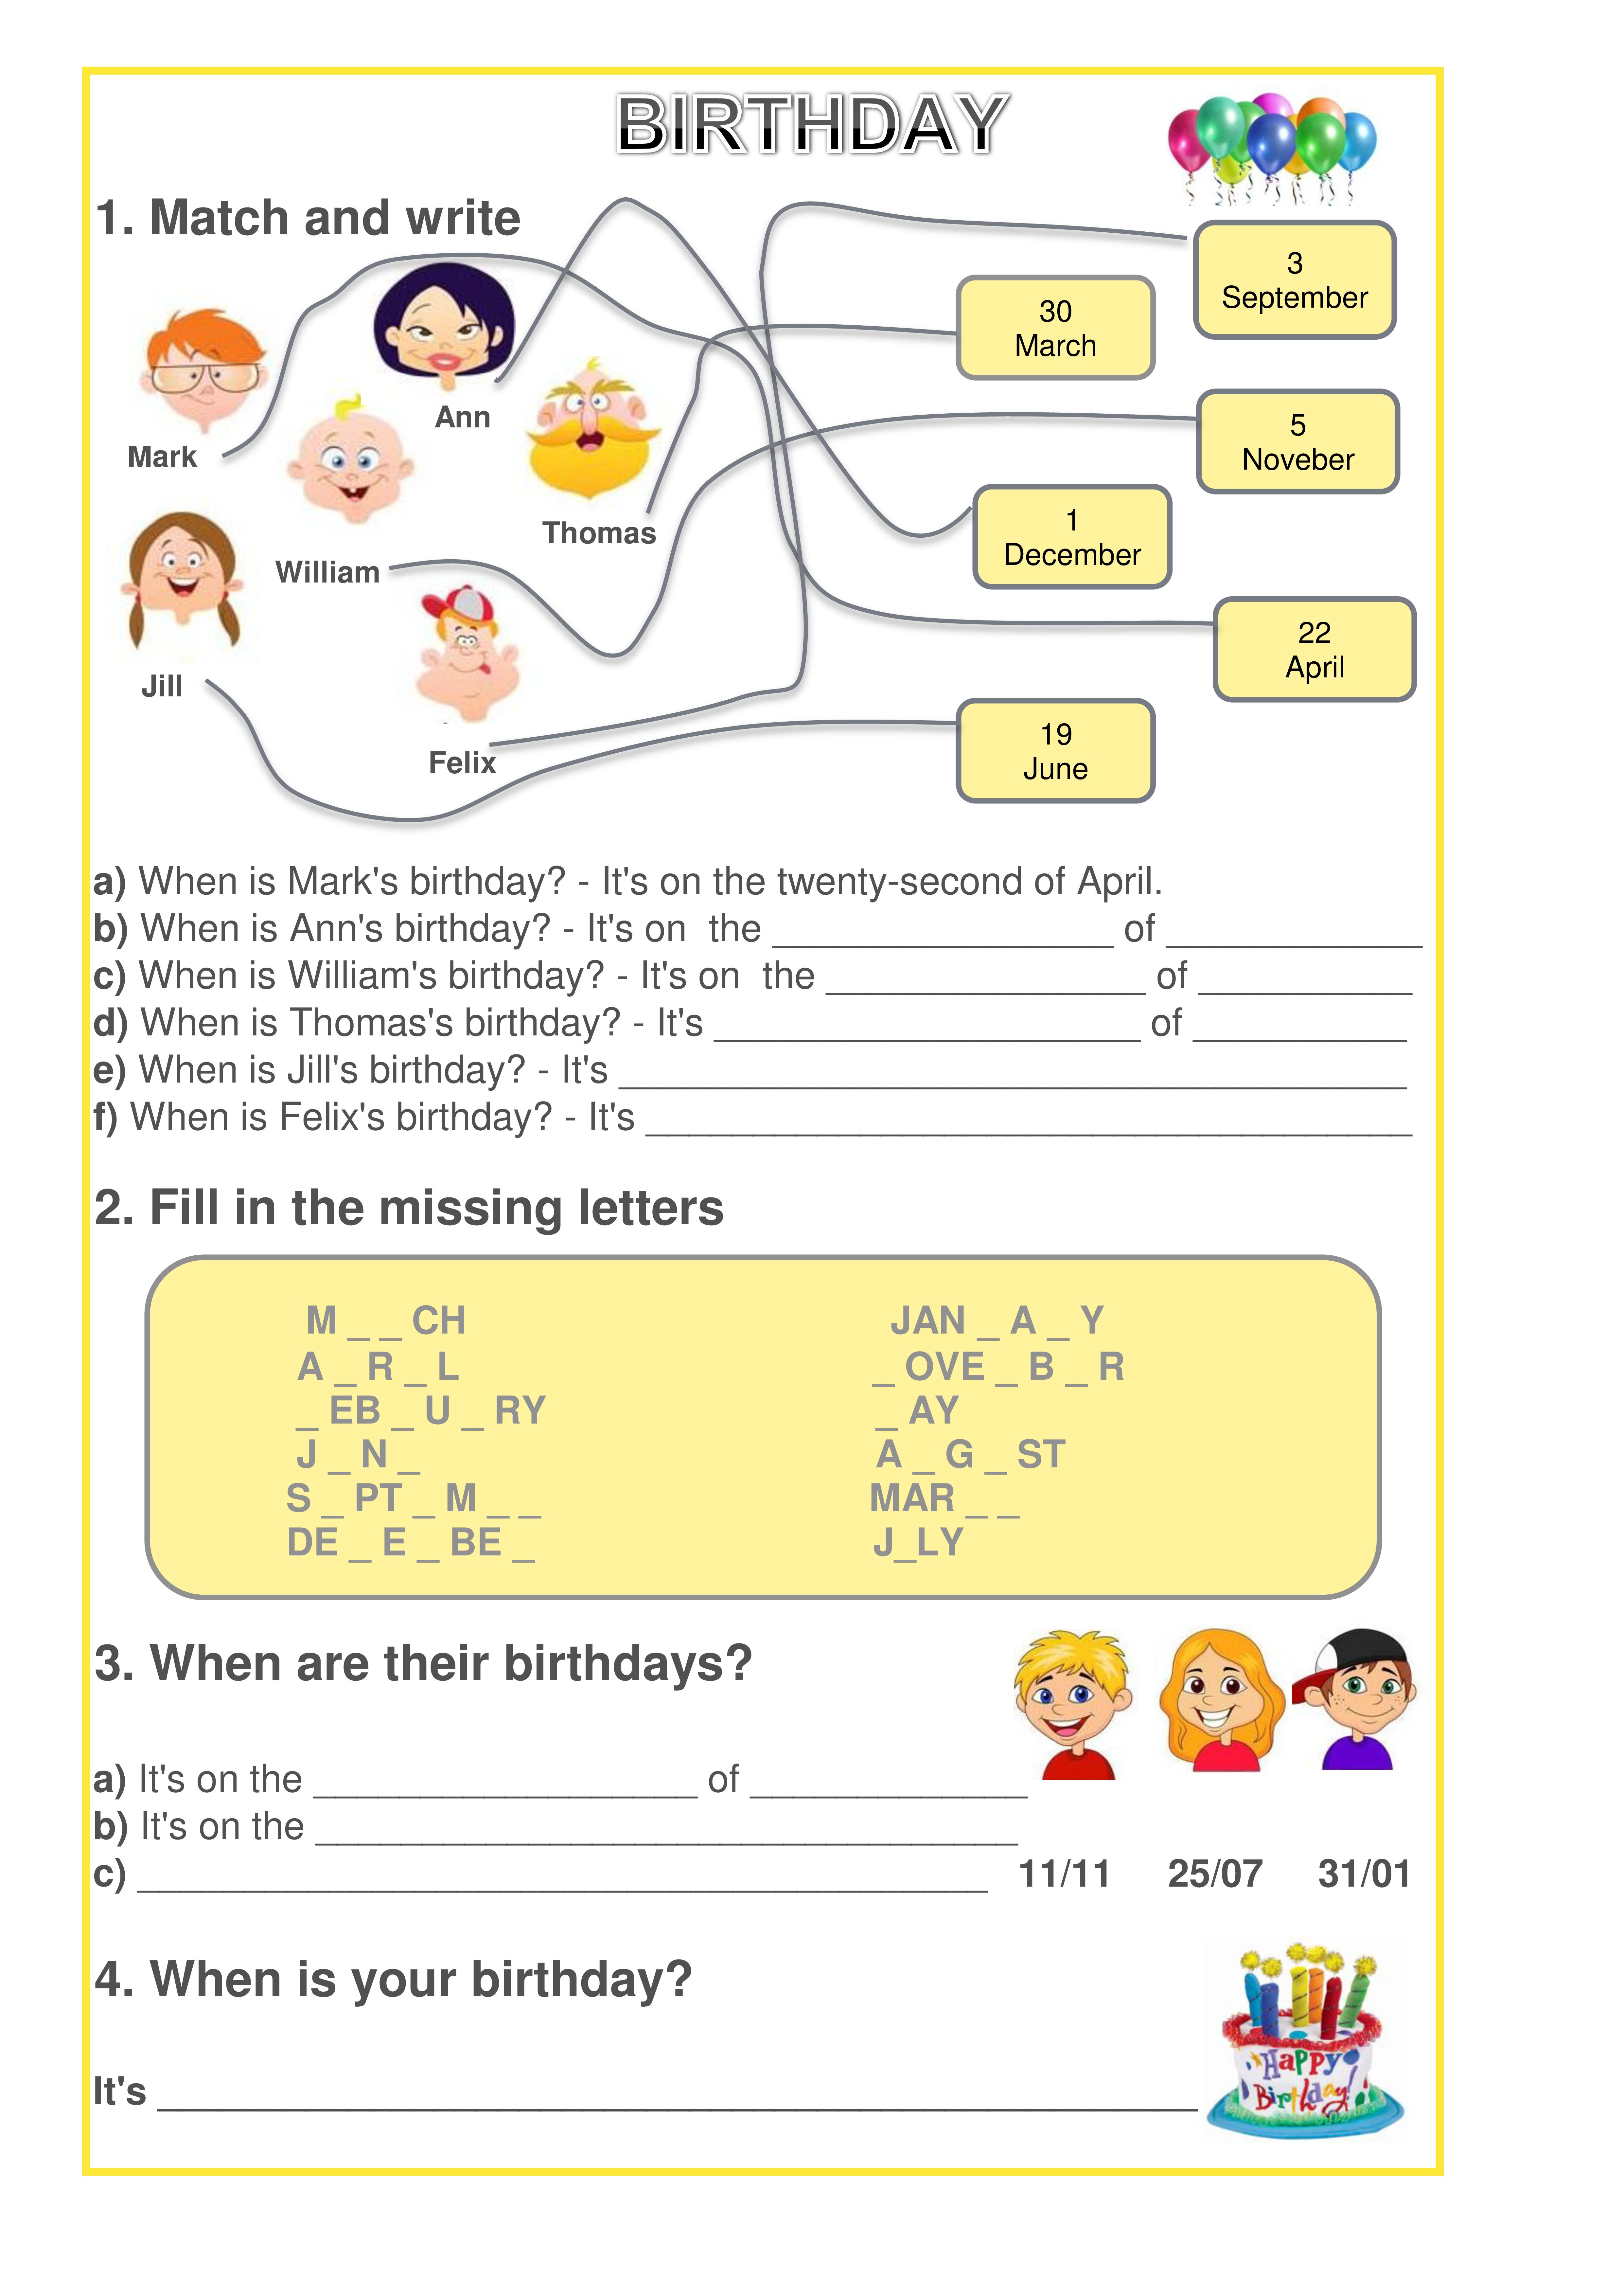 Методическая разработка День рождение по английскому языку в начальной школе